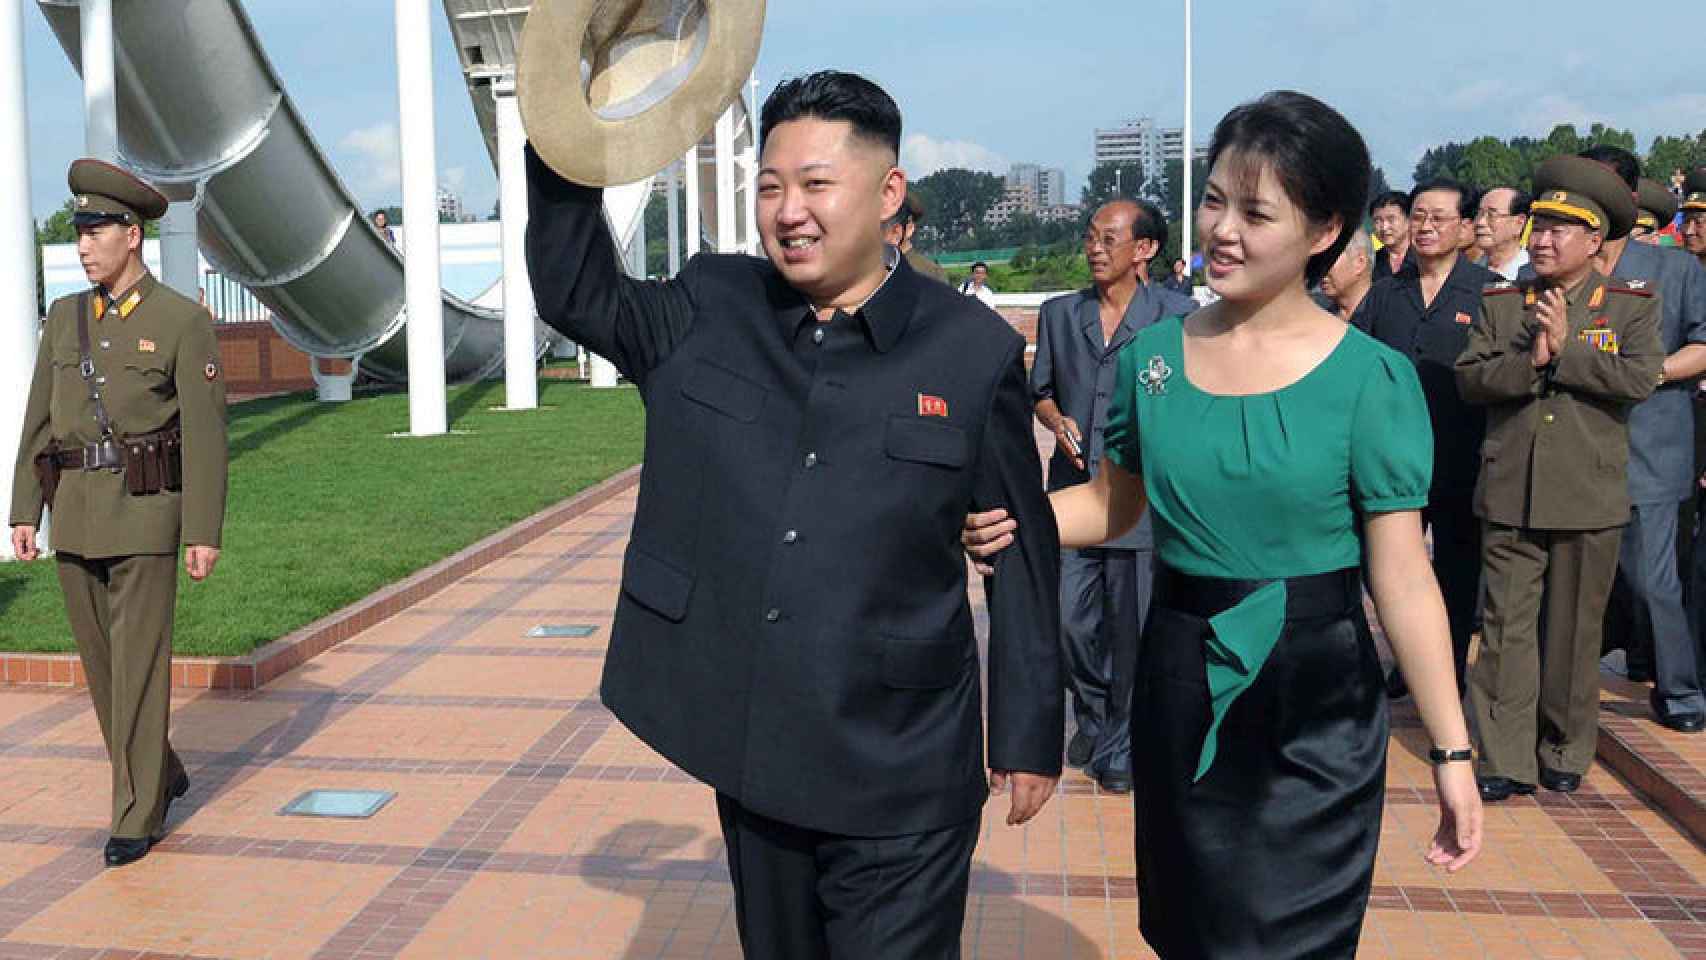 Kim y Ri durante un evento oficial